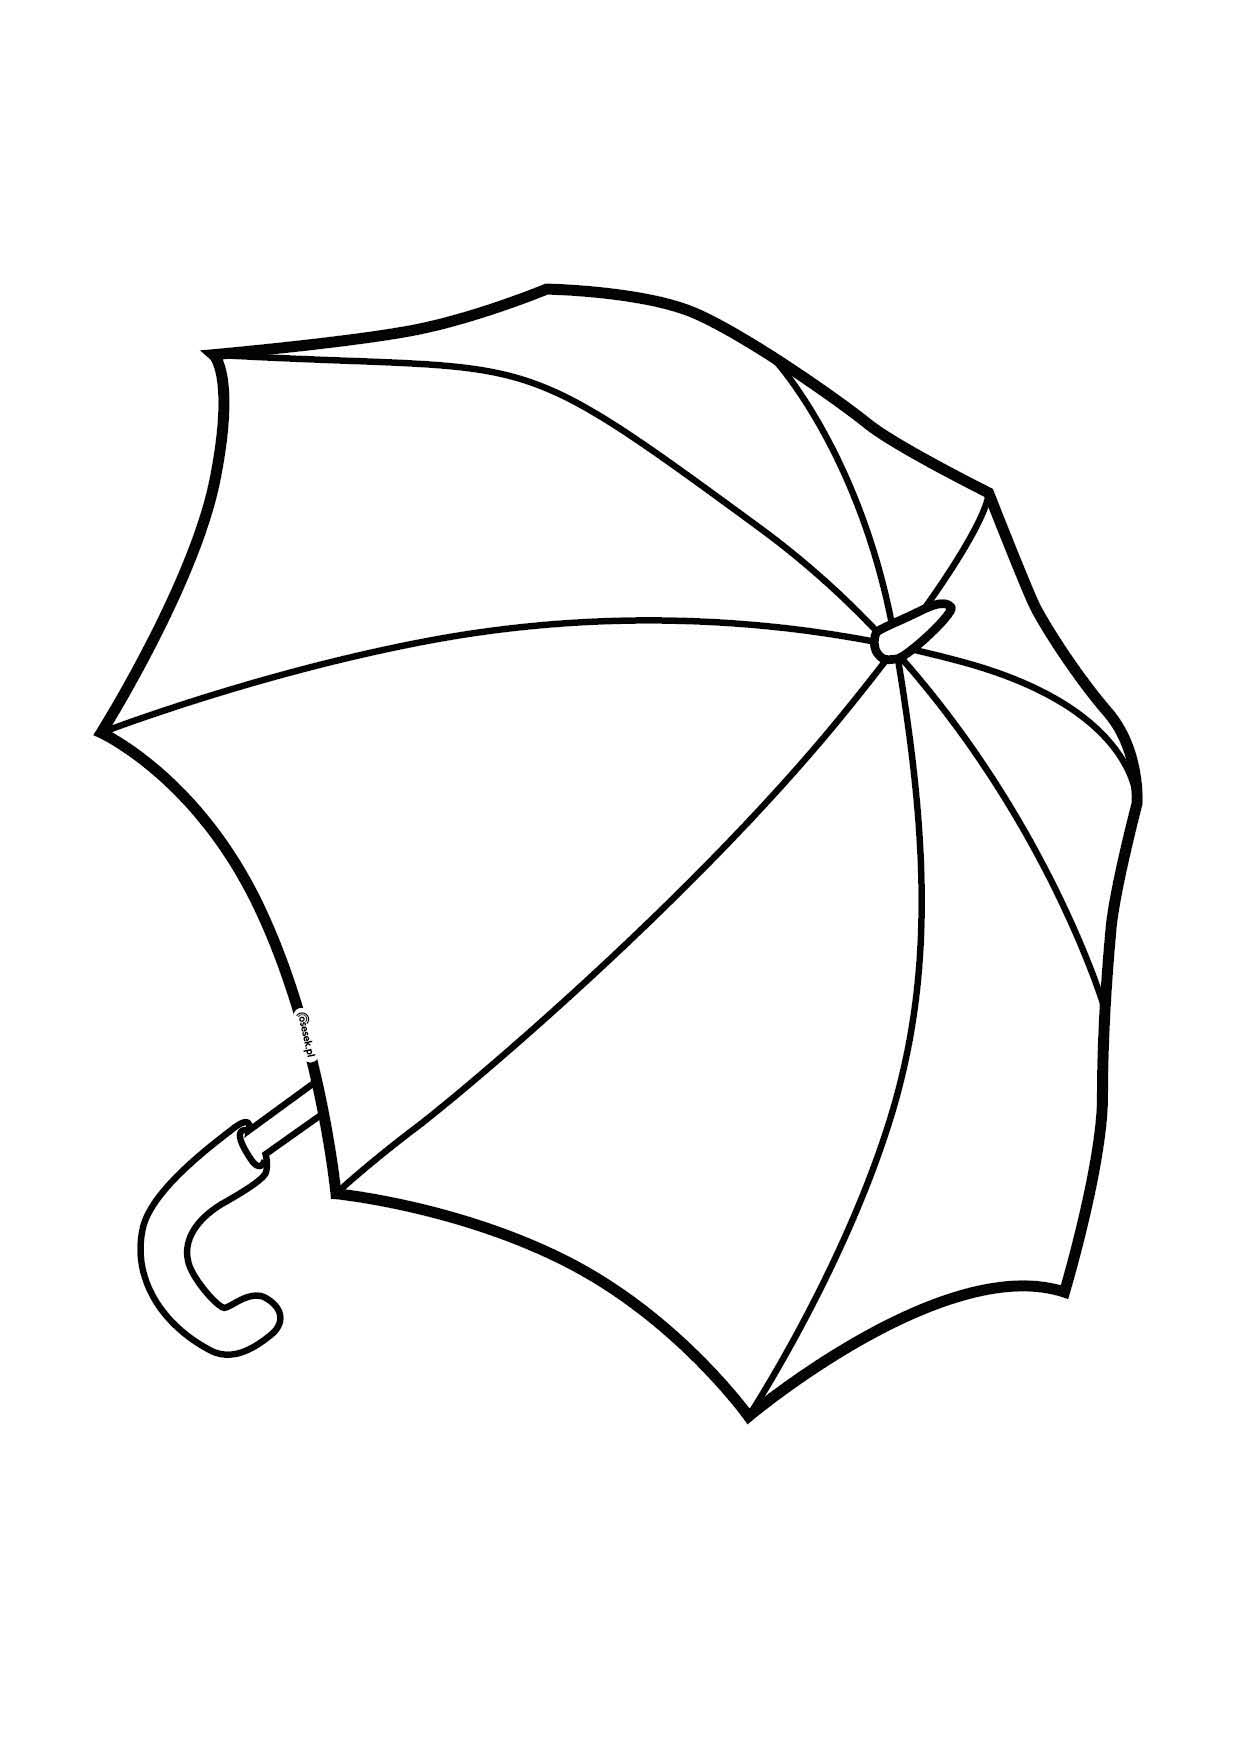 Распечатать зонтик. Зонт раскраска. Зонт раскраска для детей. Зонтик раскраска для малышей. Трафарет зонтика для вырезания.